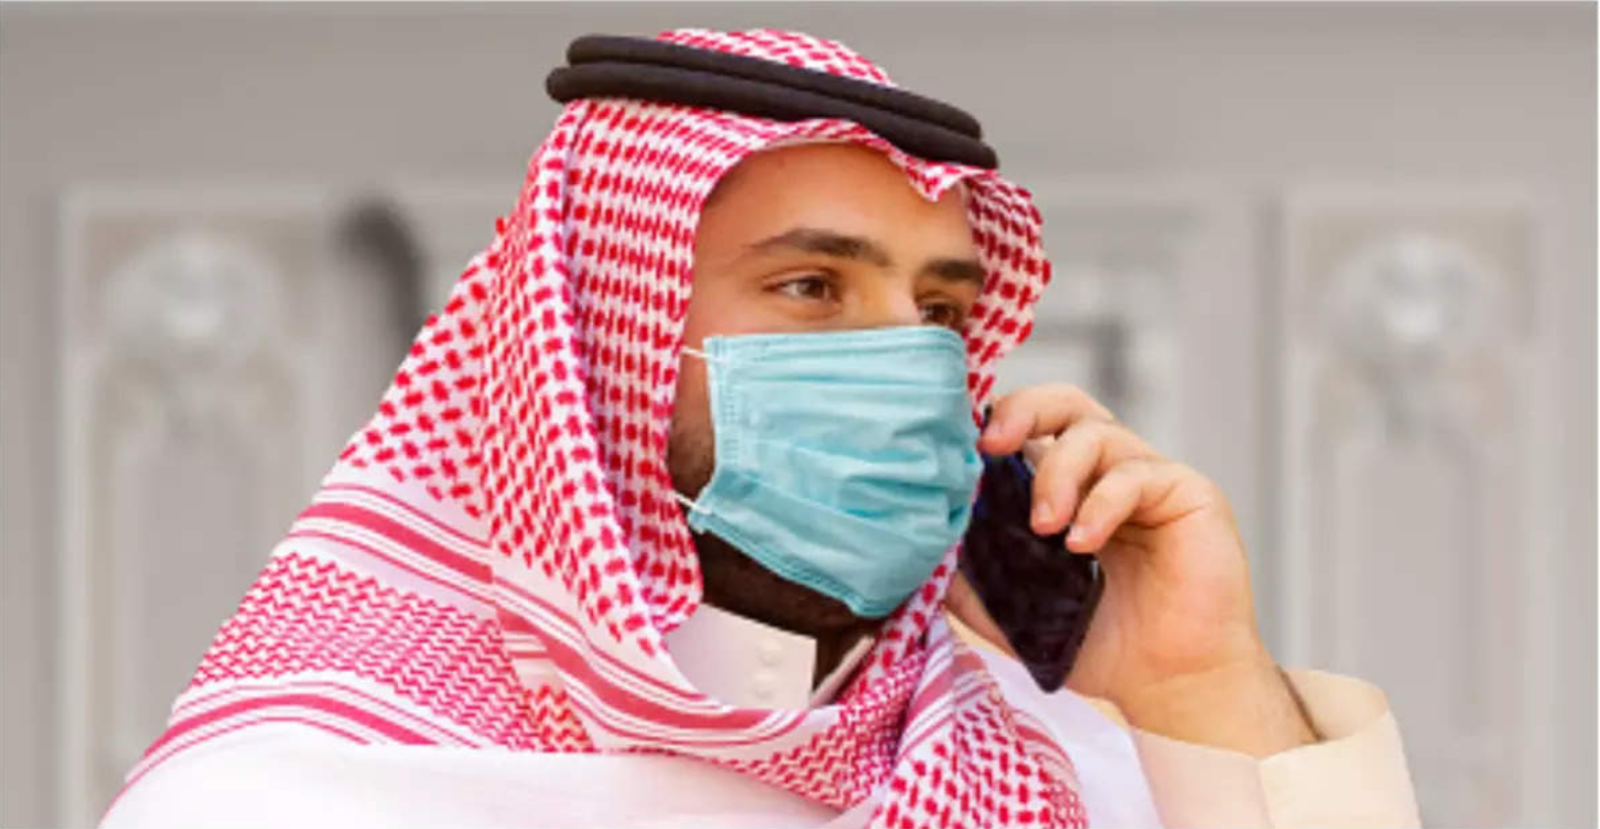 Qatar wearing a face mask